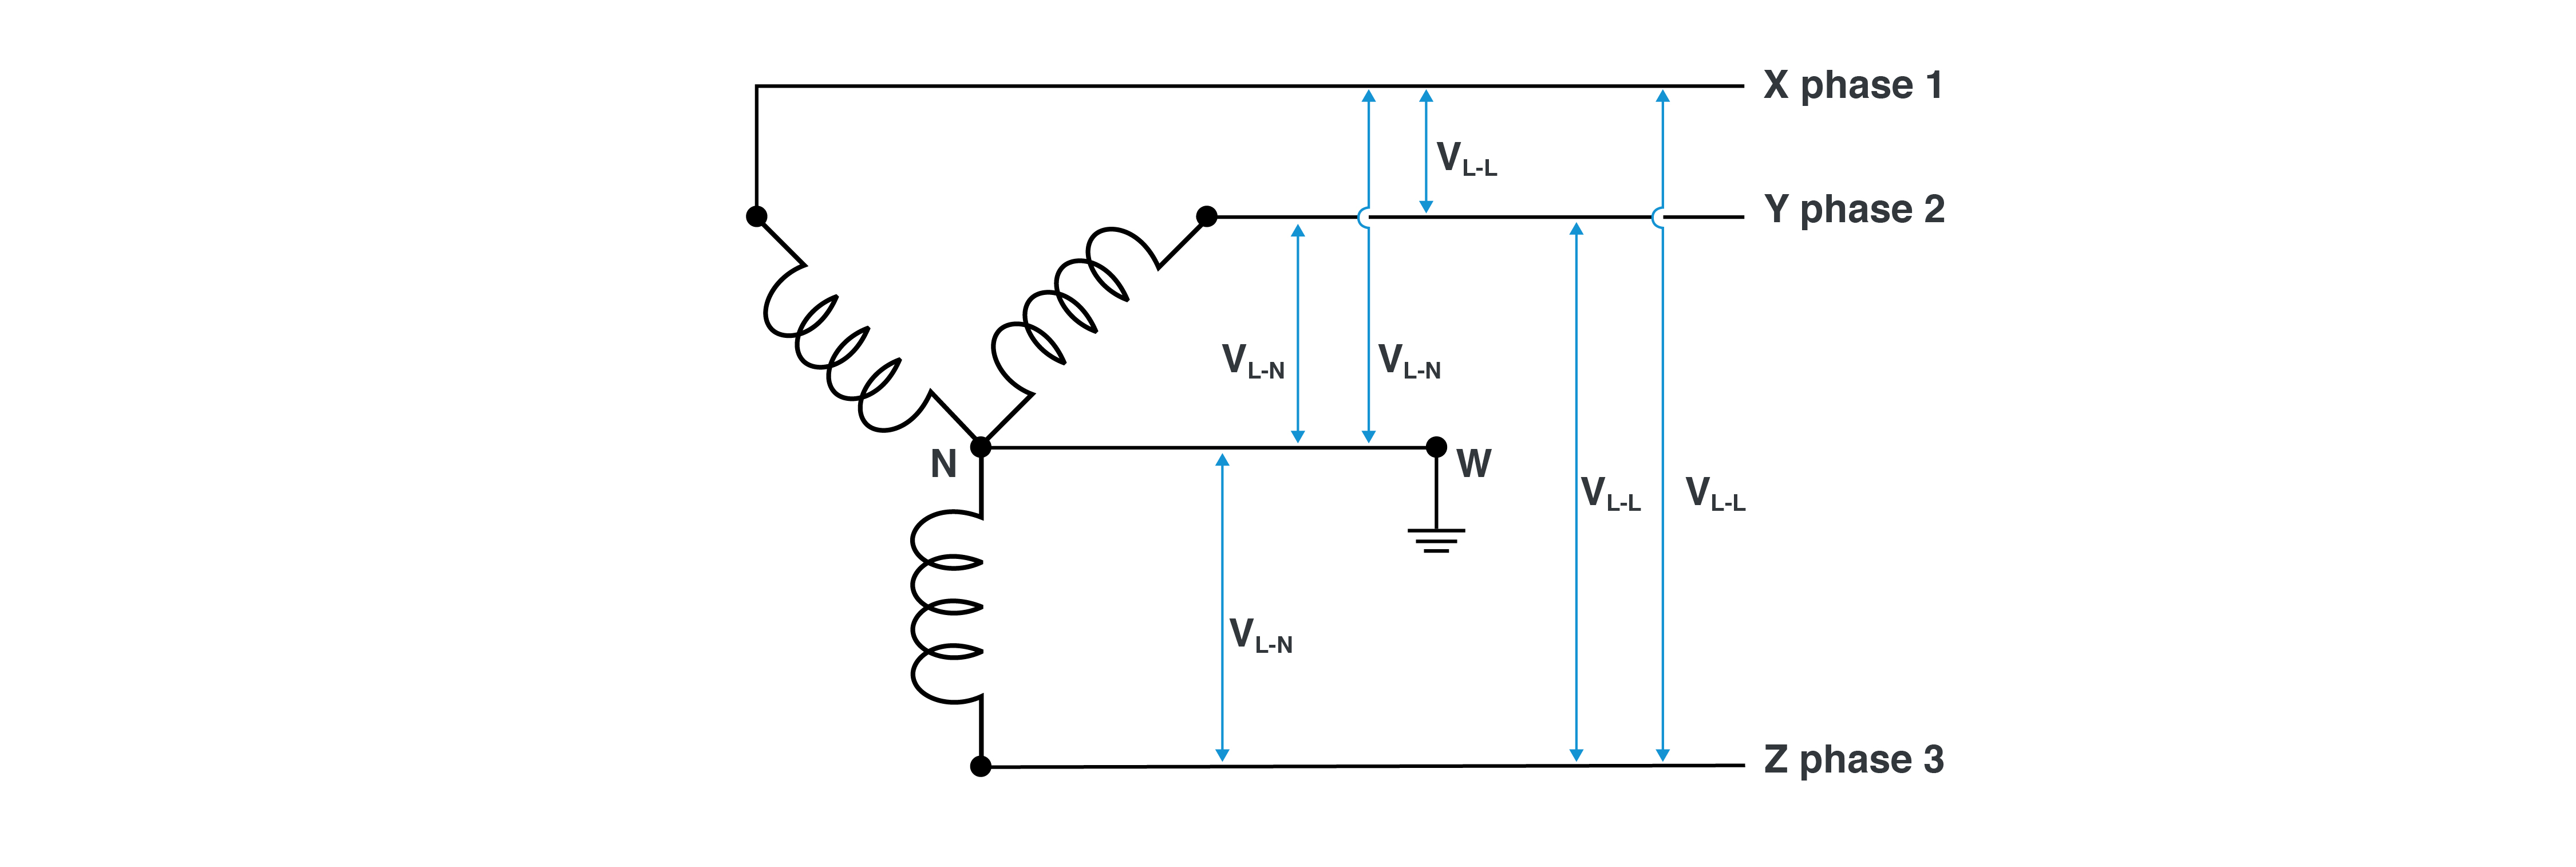 “Wye” connection schematic.